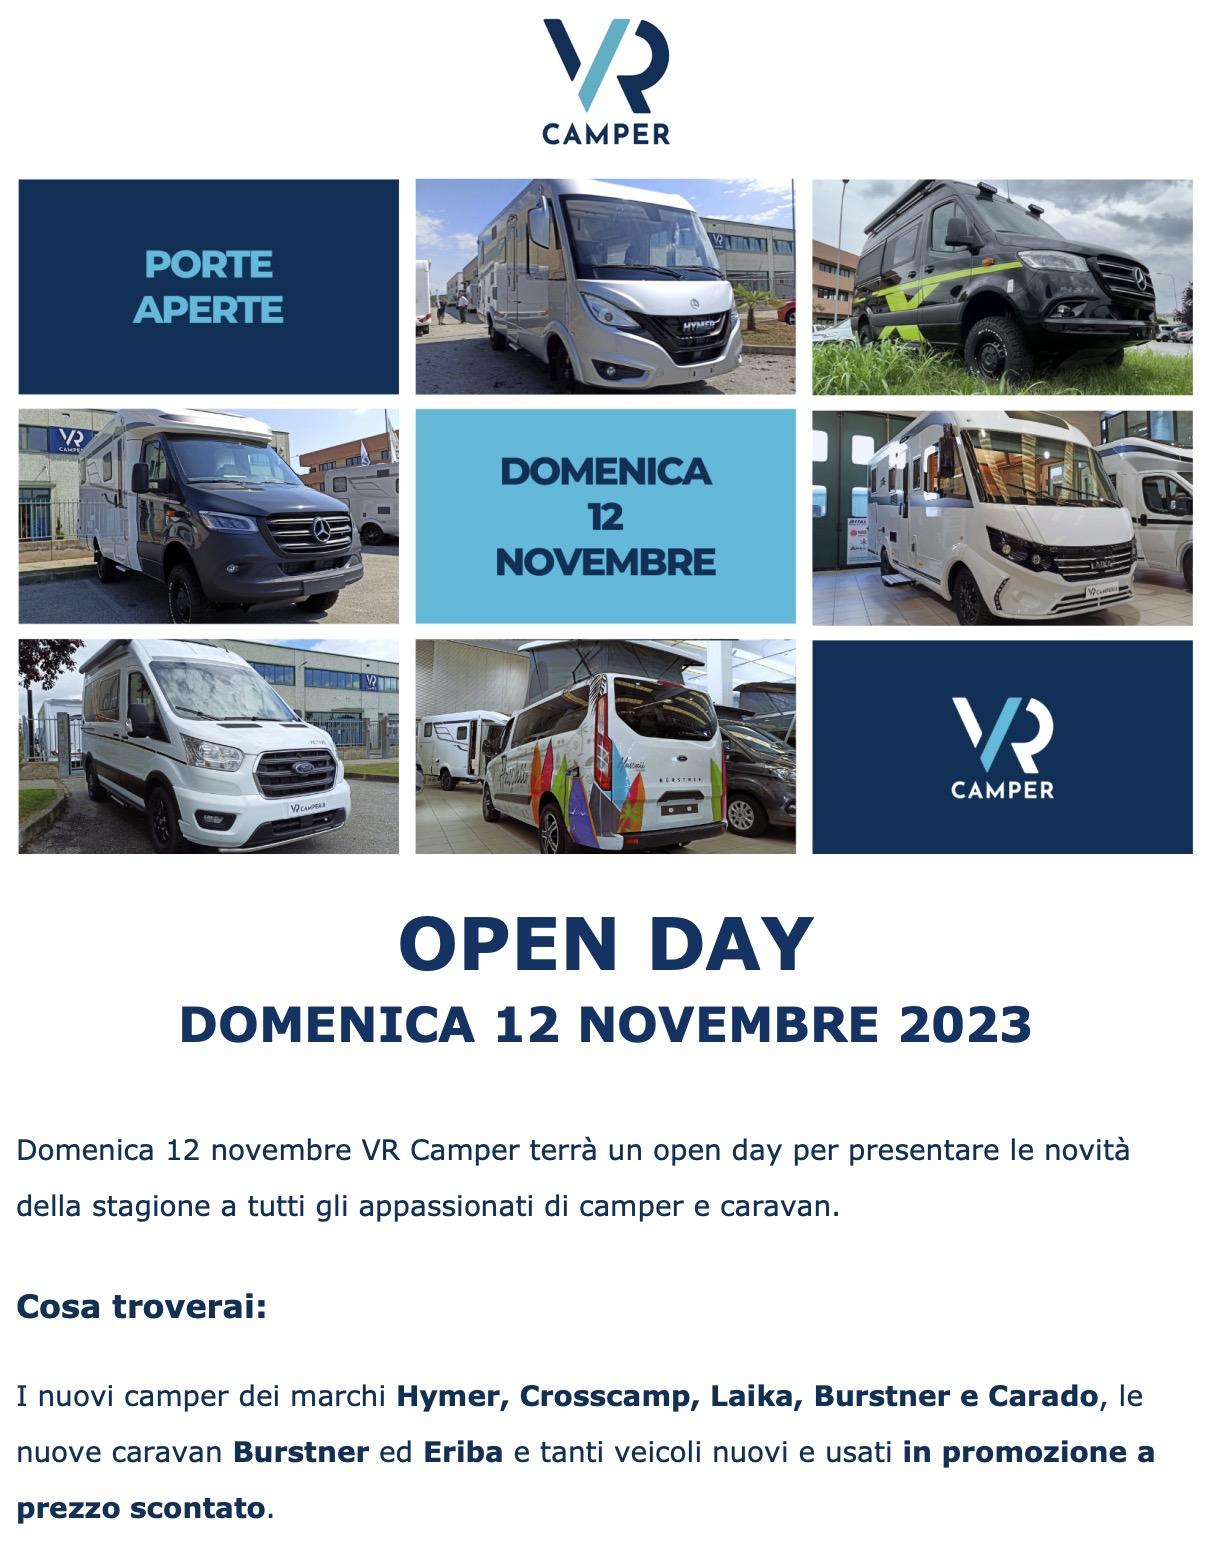 Open Day - Domenica 12 Novembre 2023 - a Druento (TO)